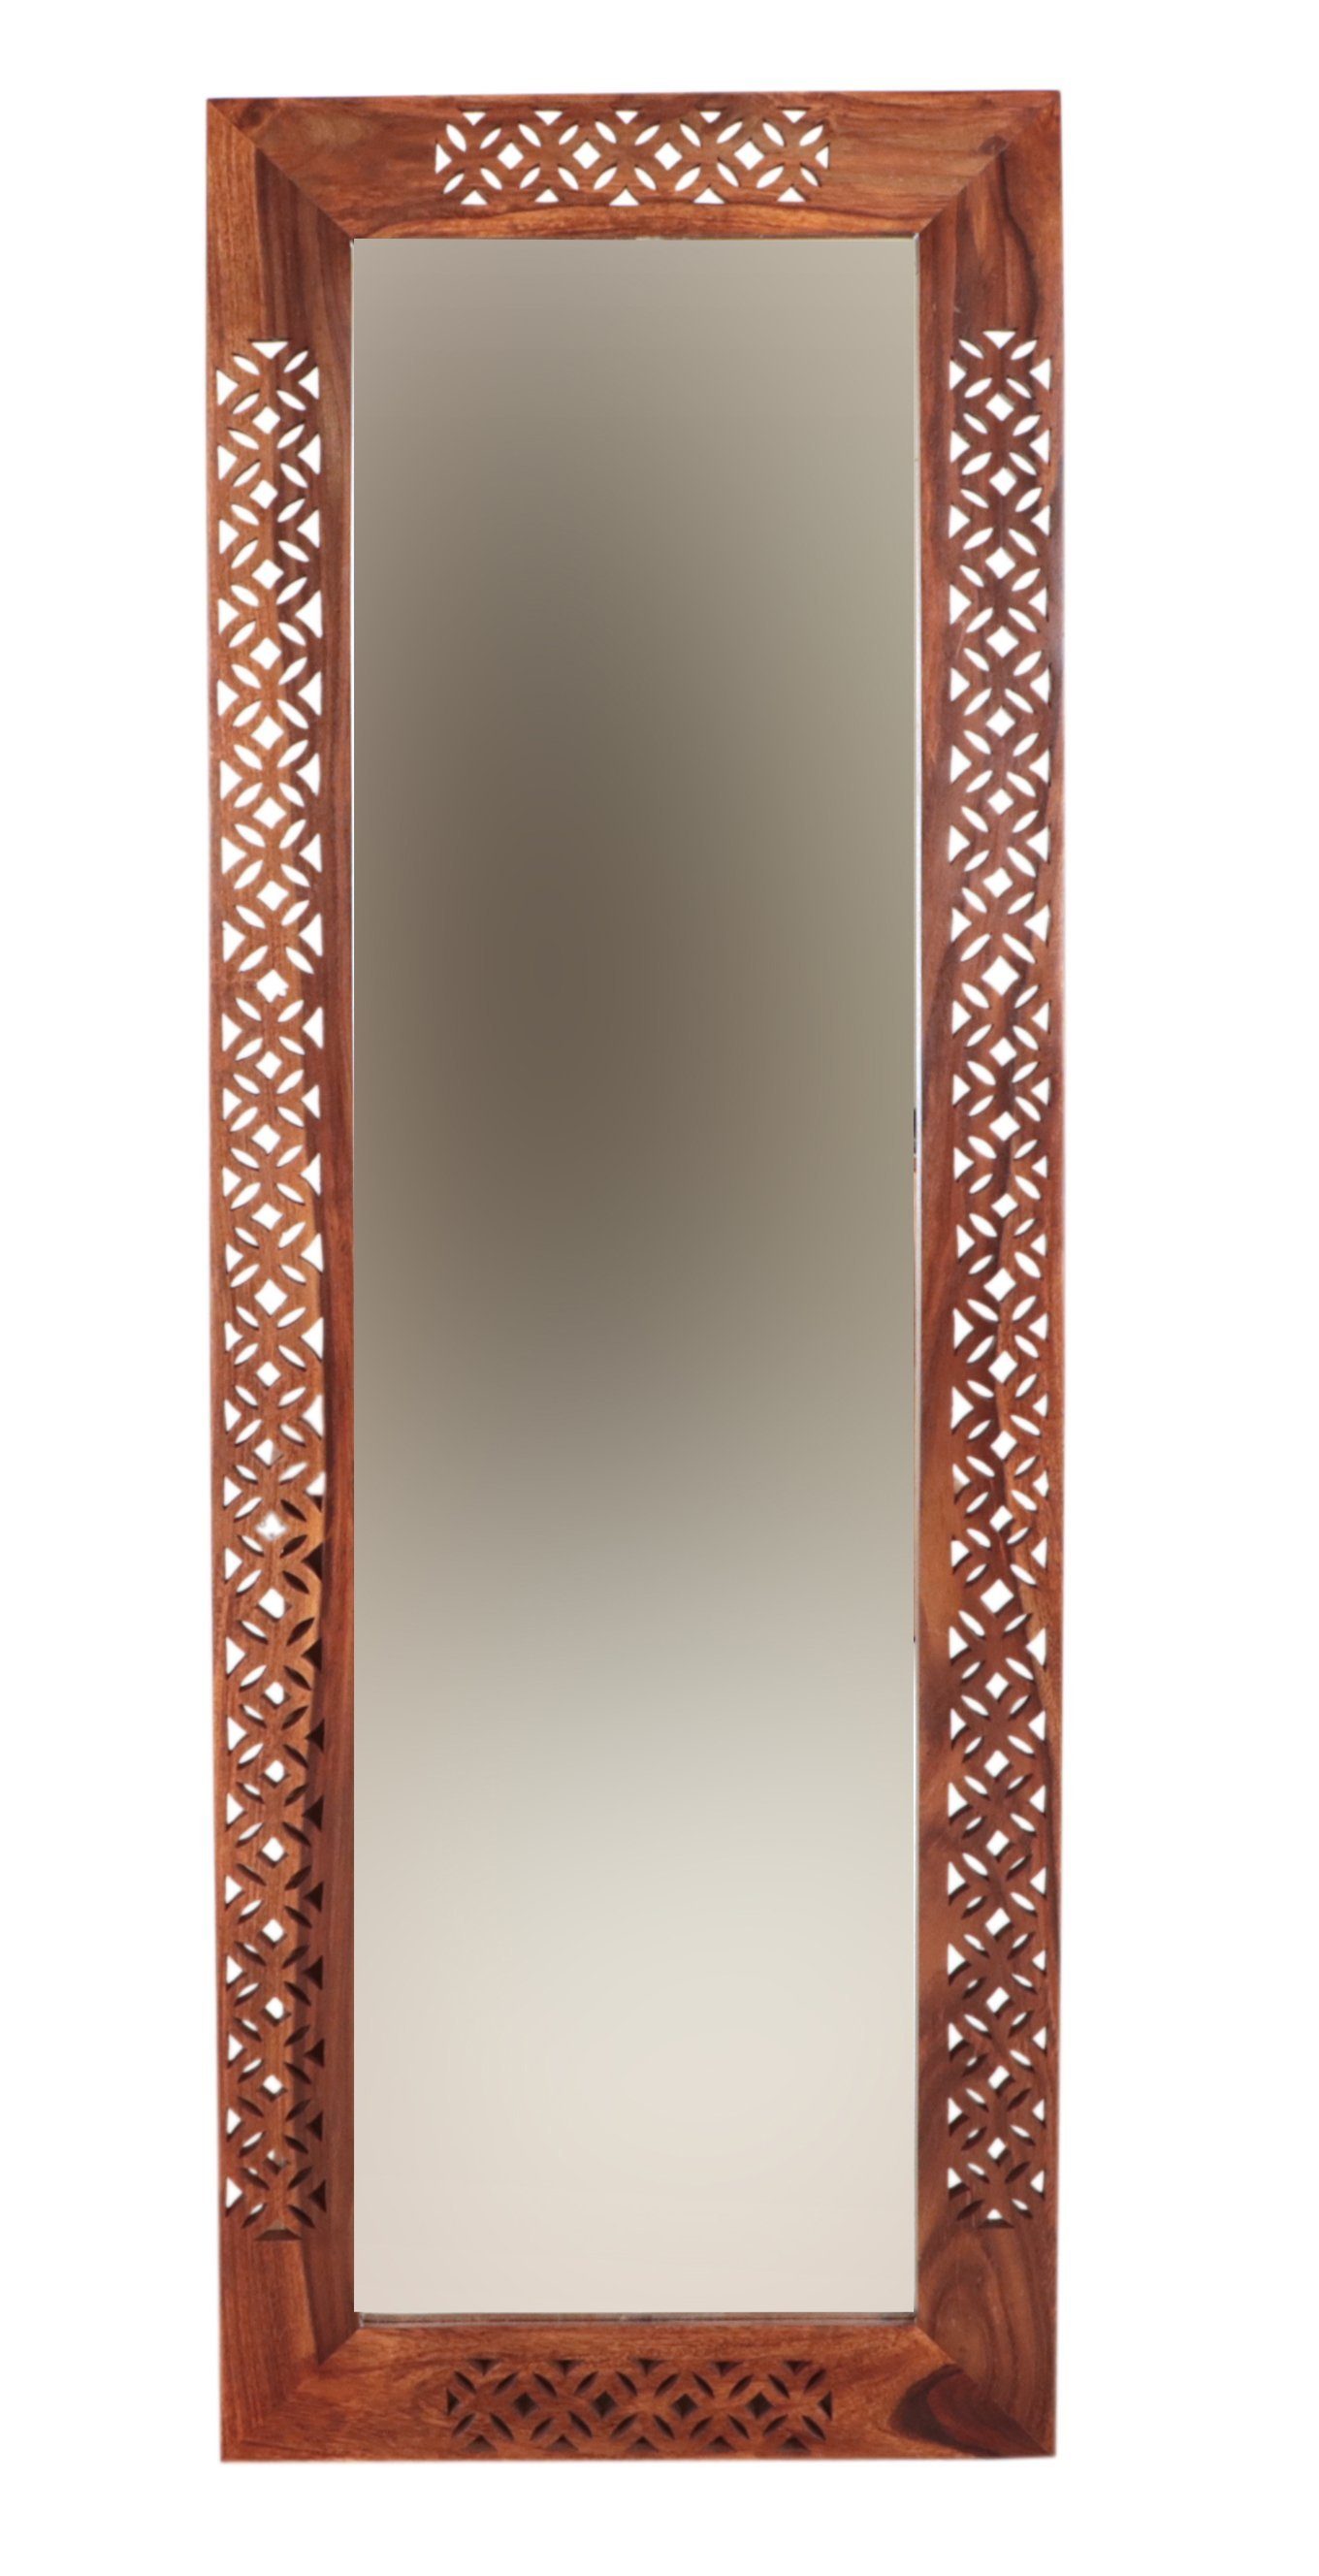 Wandspiegel Spiegel Mira Indischesmoebelhausde 60x170 Sheesham-Massivholz aus indischem